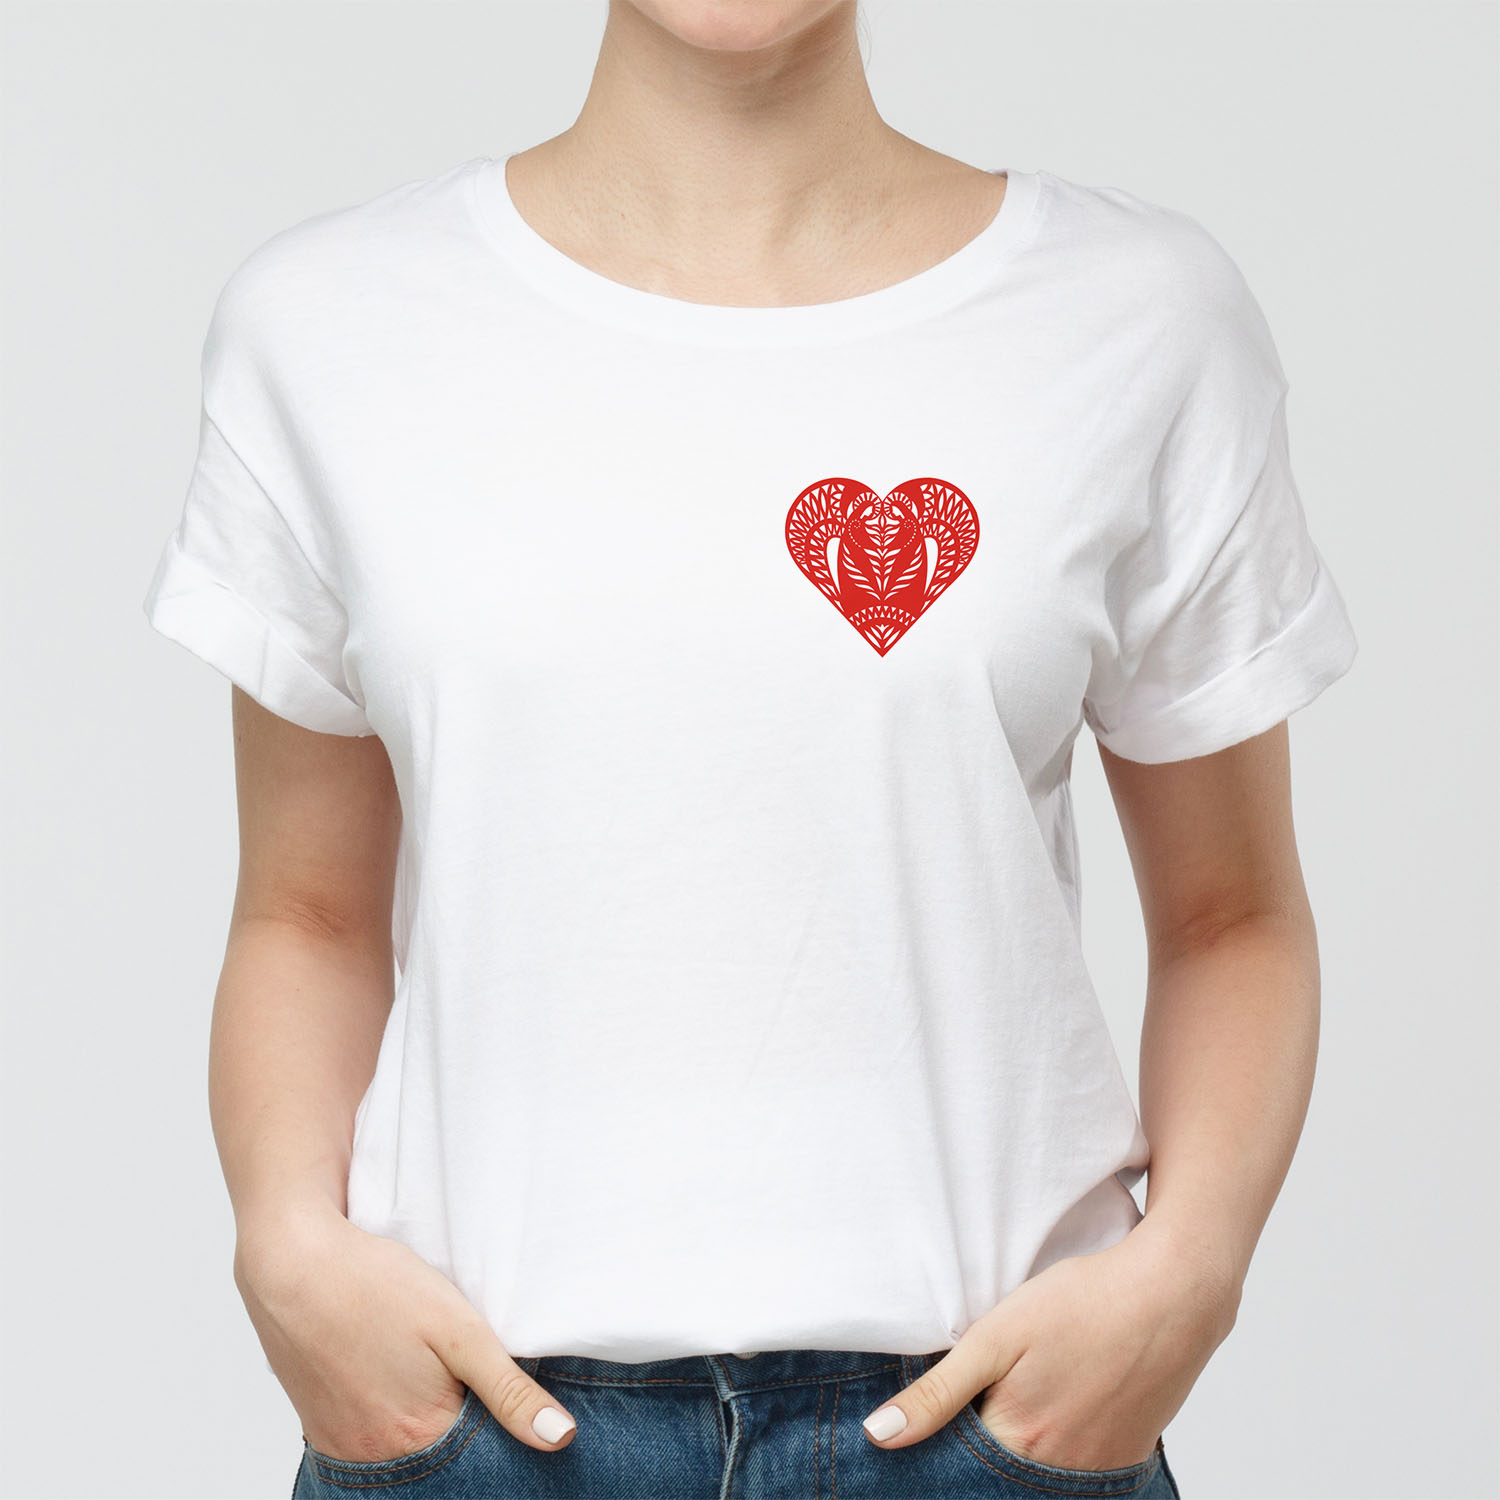 Жаночая футболка з сэрцам «Выцінанка» з індывідуальным прынтом